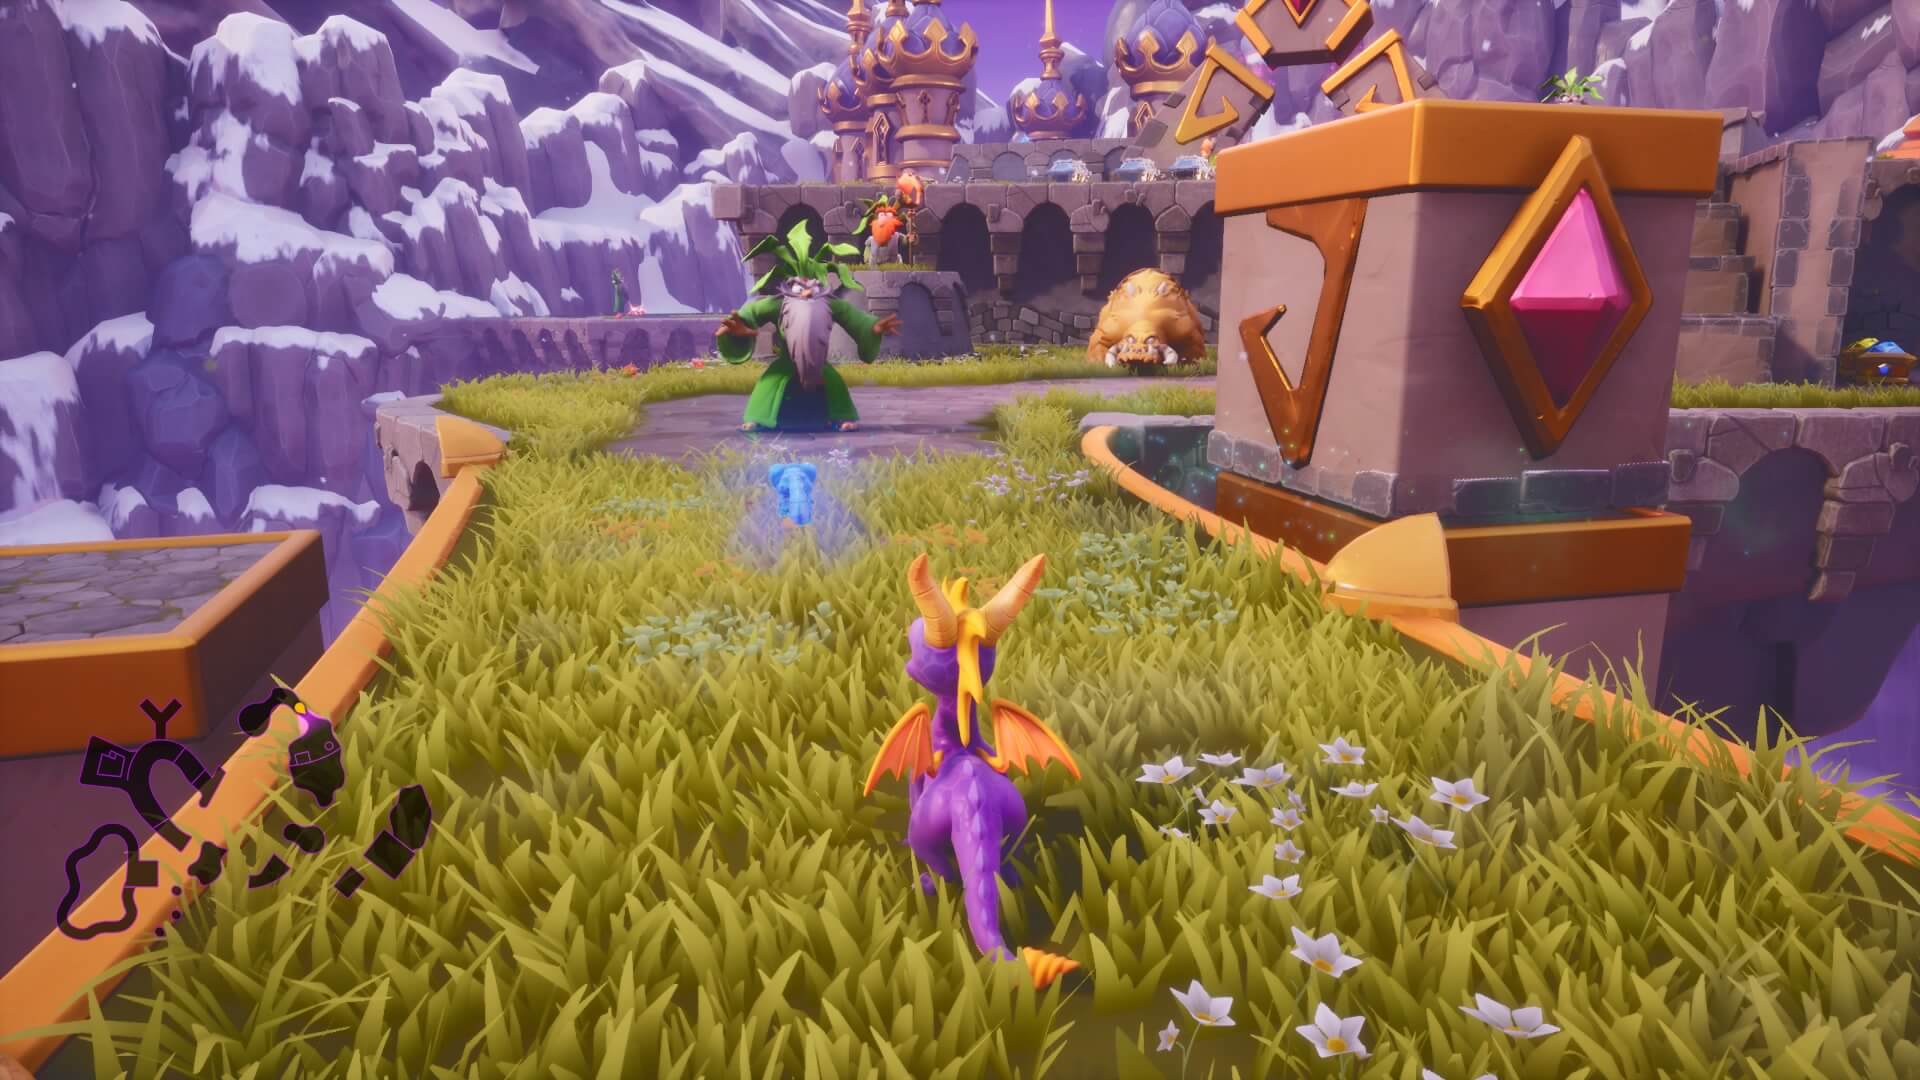 Spyro: do pior ao melhor, segundo a crítica